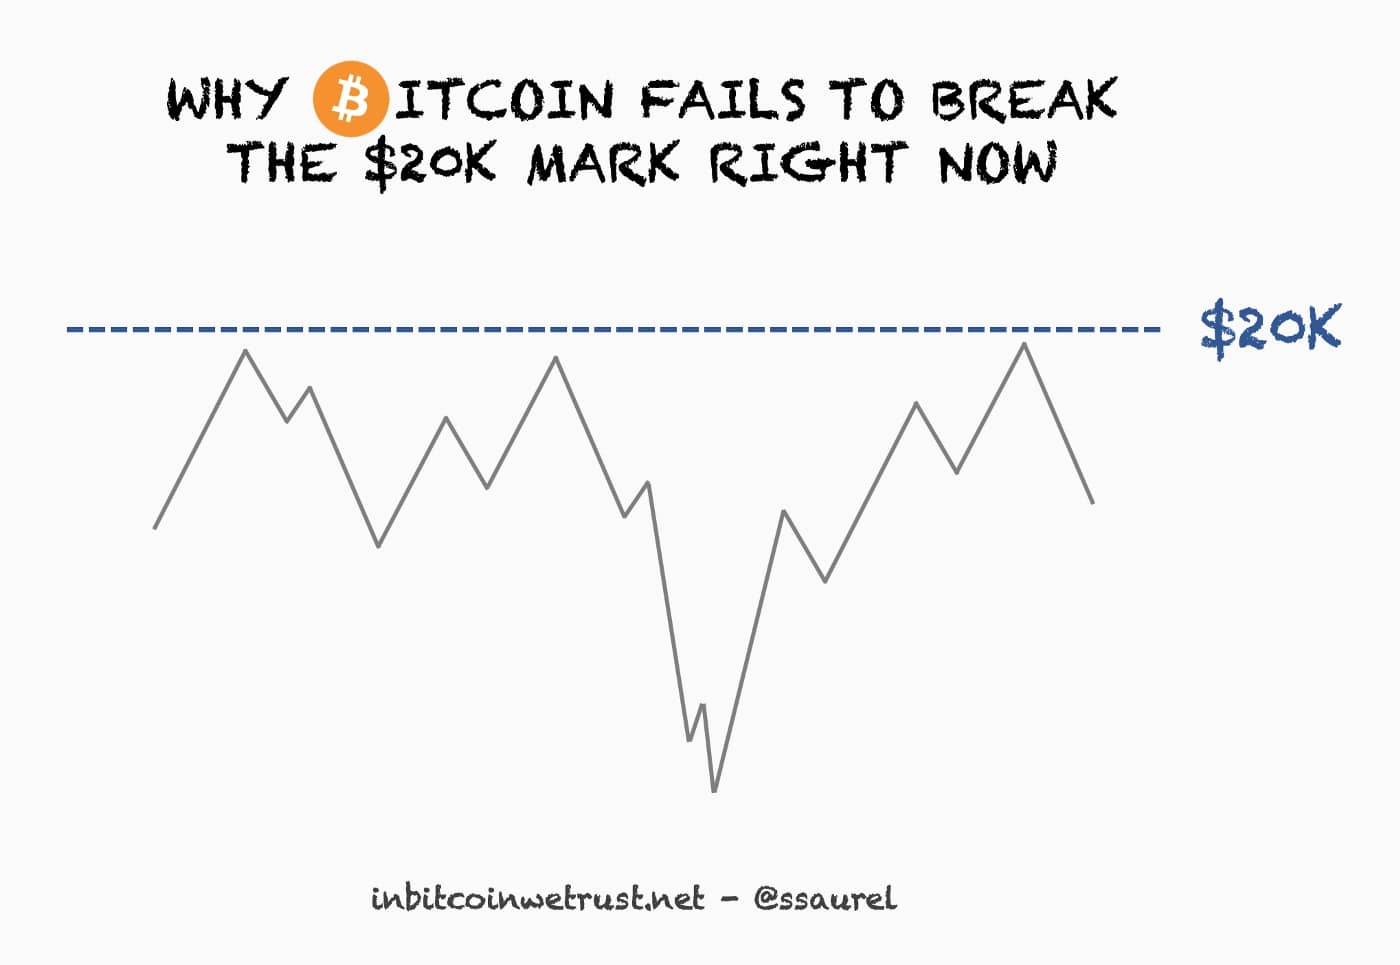 Le Bitcoin n'arrive pas à franchir les $20K actuellement pour deux raisons principales